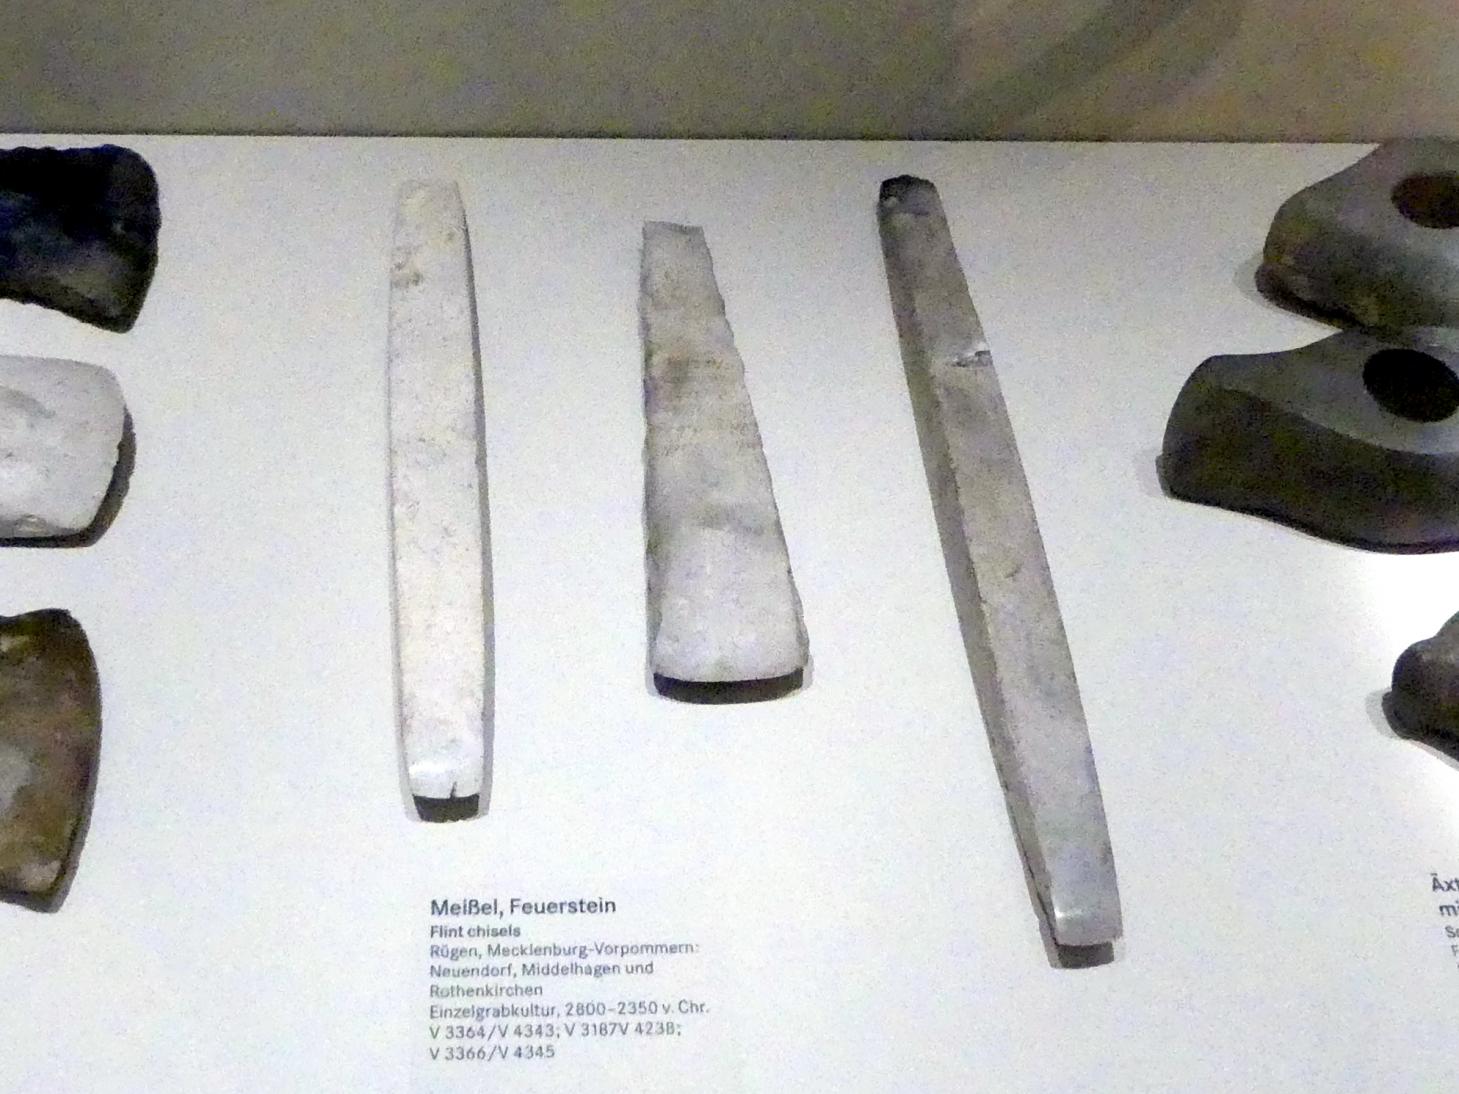 Meißel, Nordisches Neolithikum, 4400 - 2350 v. Chr., 2800 - 2350 v. Chr., Bild 1/2